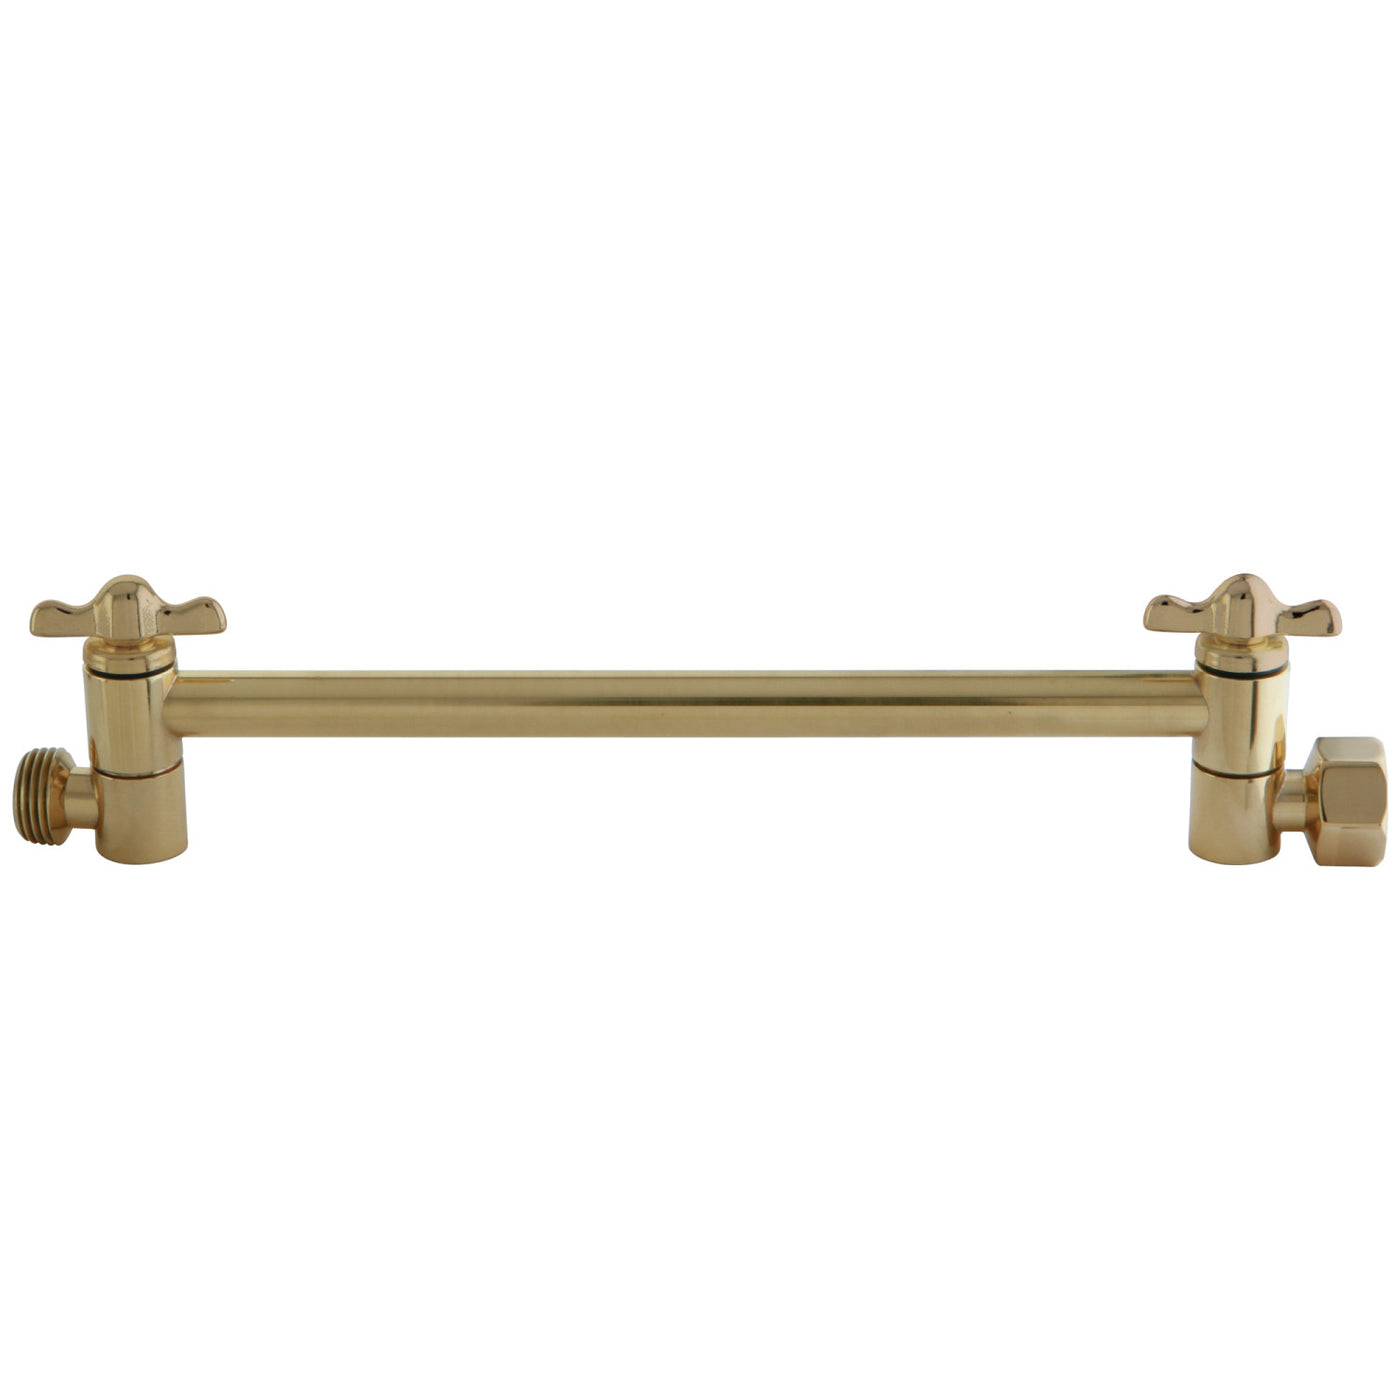 Elements of Design DK1532 10-Inch Adjustable High-Low Shower Arm, Polished Brass